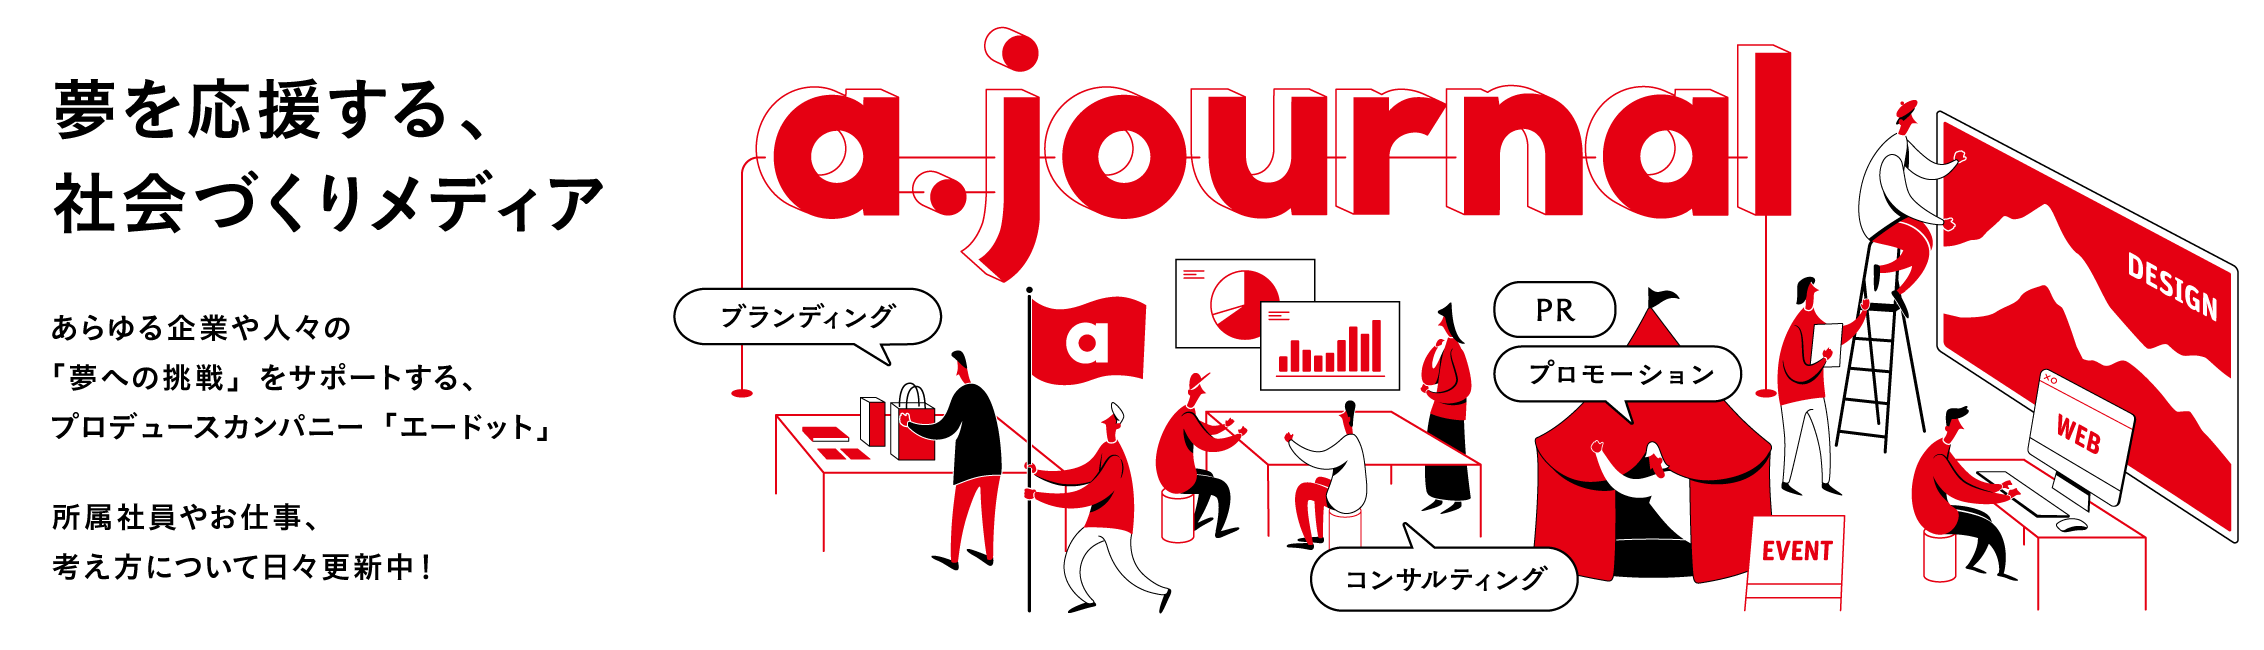 しんちゃんコラボ広告 第3弾 春日部駅から日本全国へ ブランドジャーナリズム を体現したoisixのマーケティング方法とは エードット ジャーナル